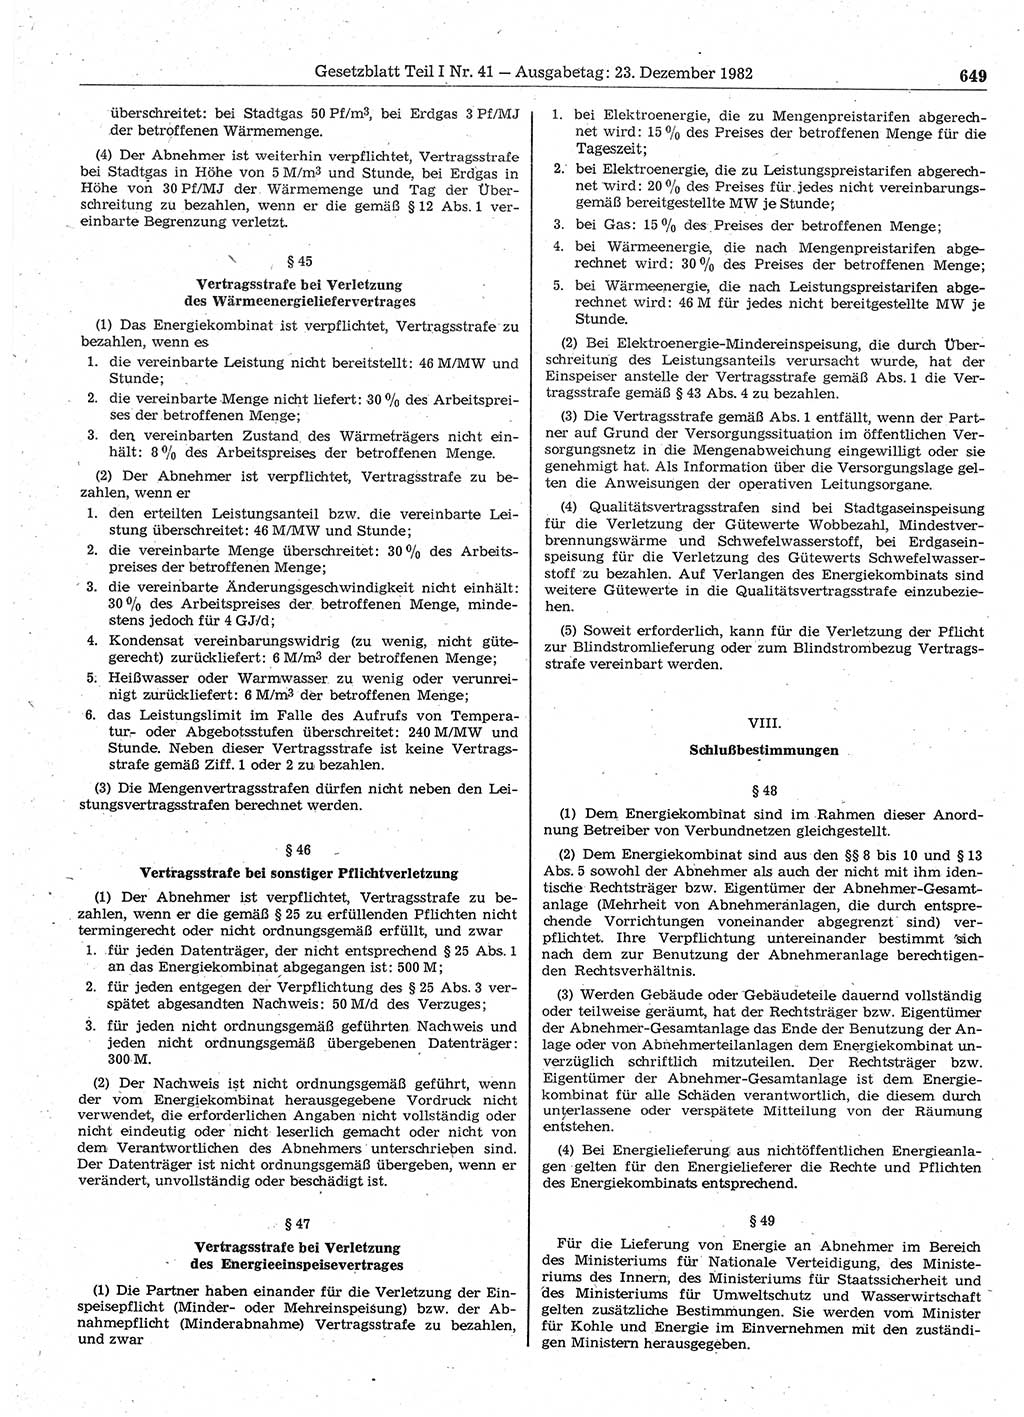 Gesetzblatt (GBl.) der Deutschen Demokratischen Republik (DDR) Teil Ⅰ 1982, Seite 649 (GBl. DDR Ⅰ 1982, S. 649)